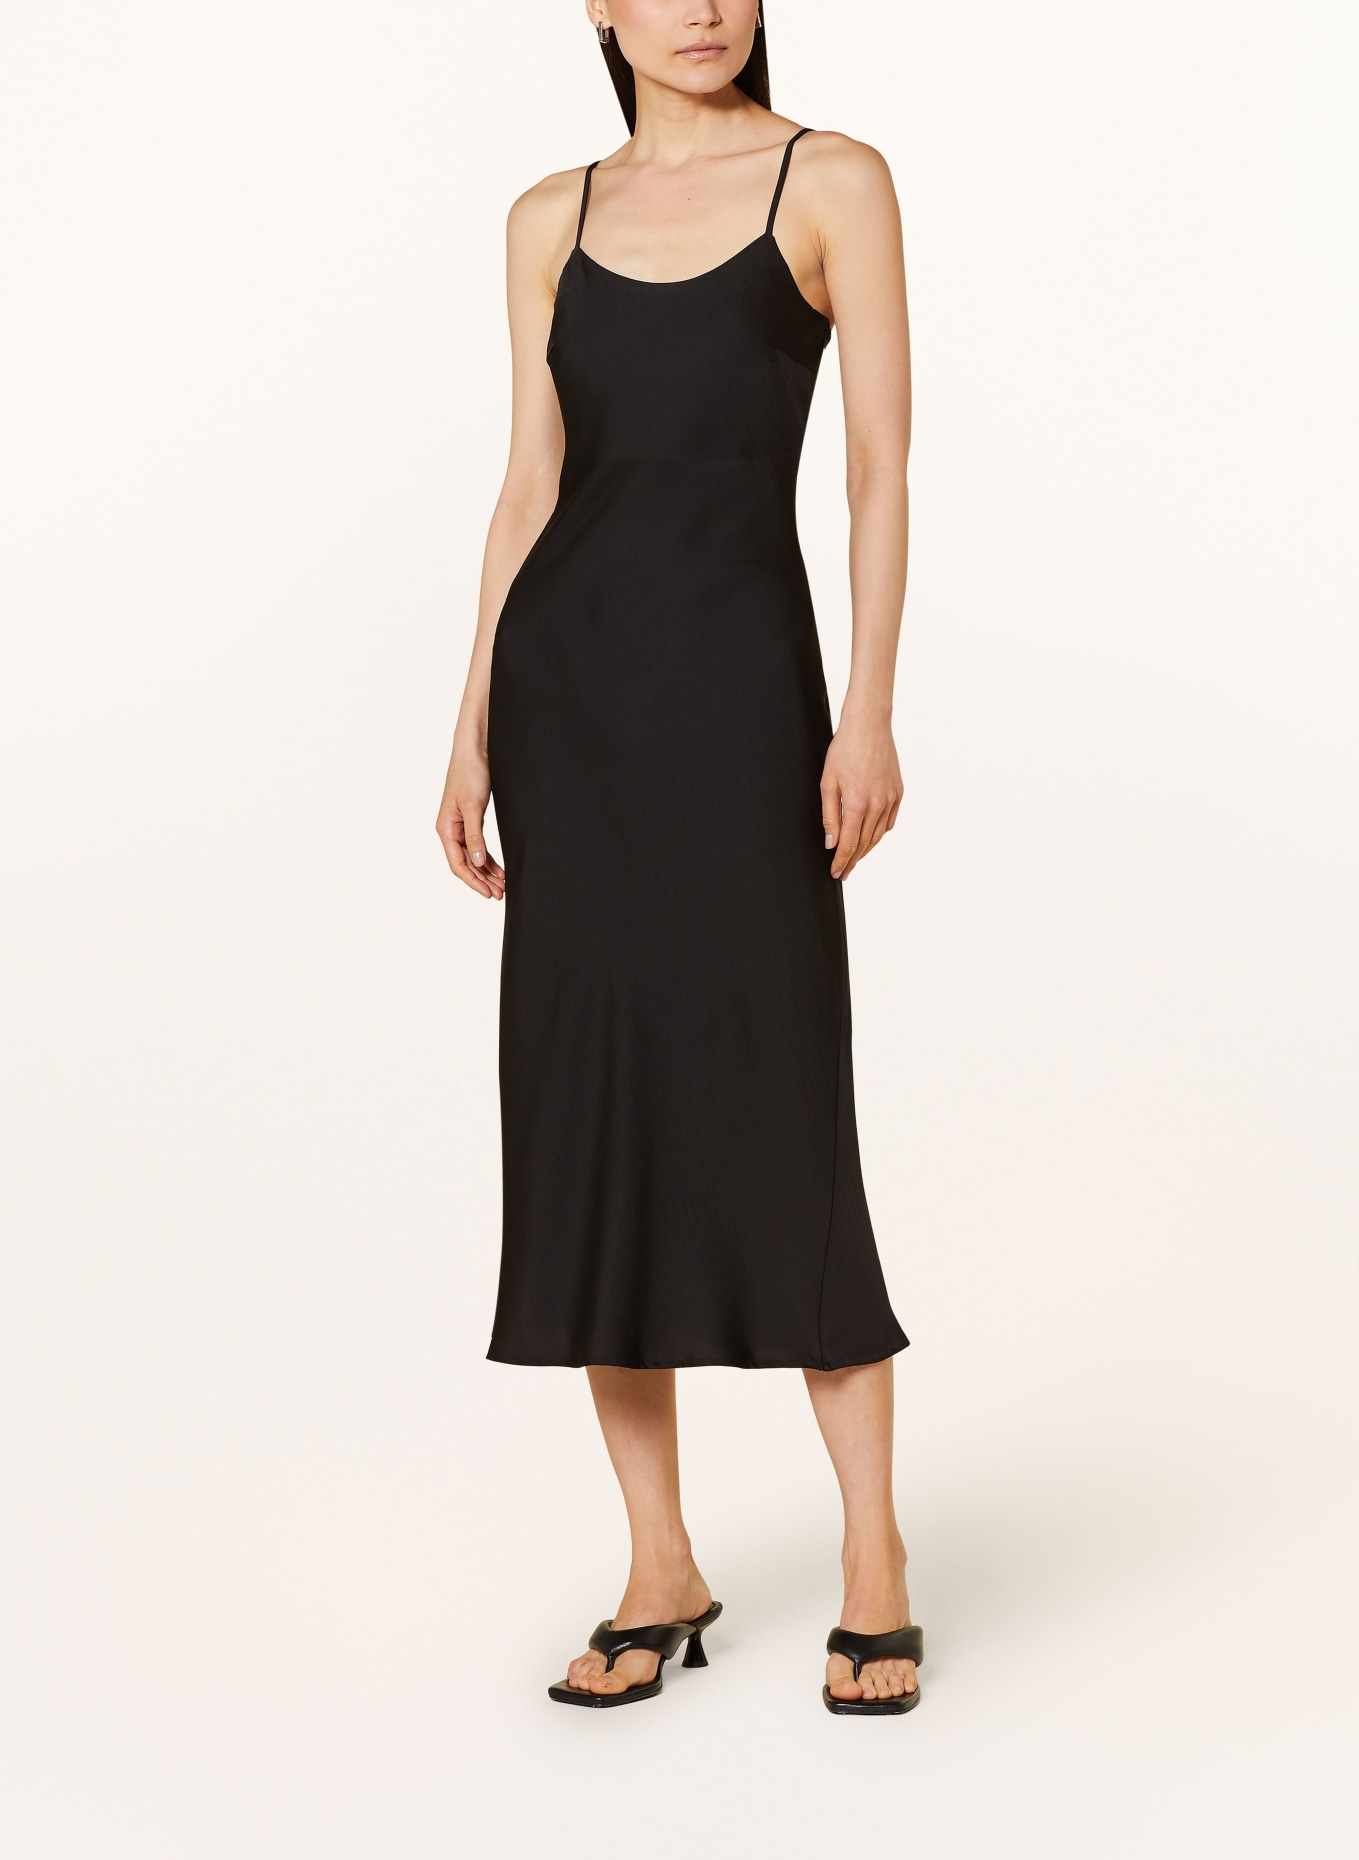 ONLY Satin dress, Color: BLACK (Image 2)